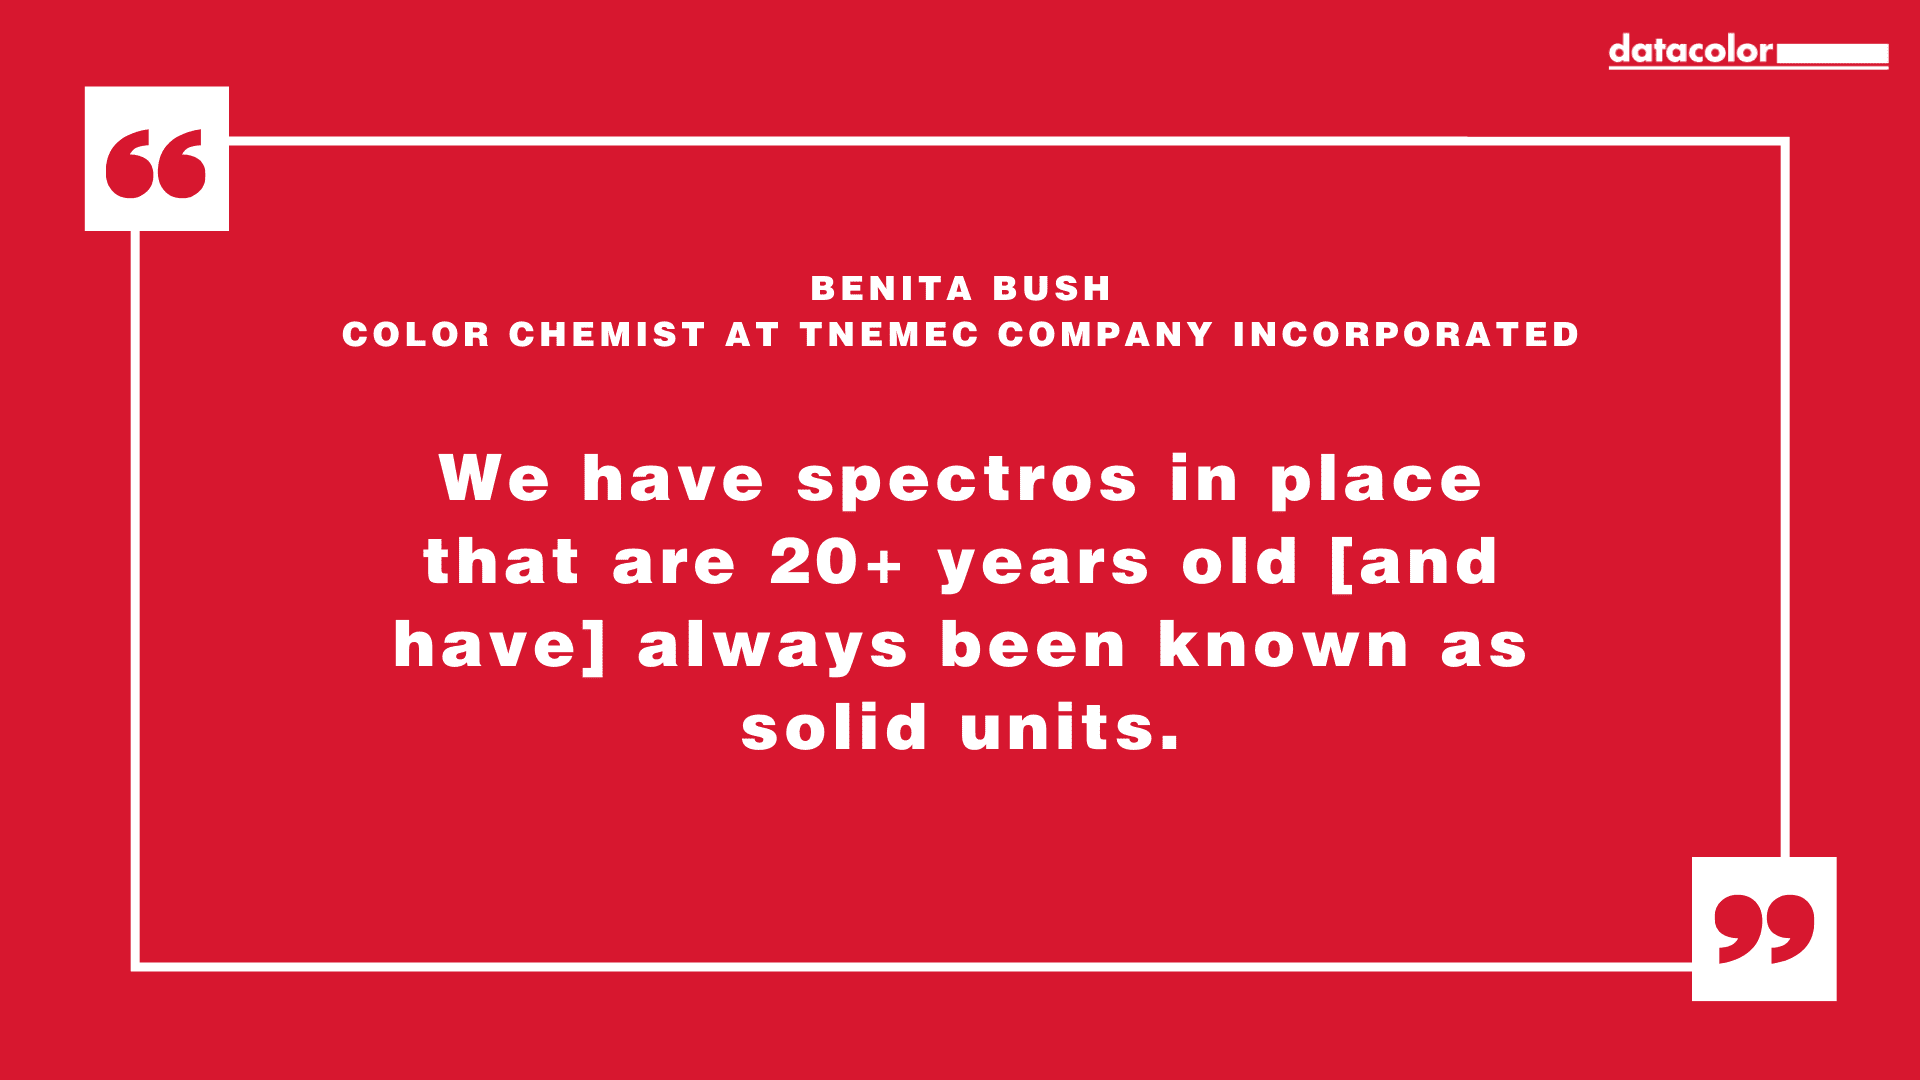 Cita de Benita Bush, química del color de Tnemec Company Incorporated